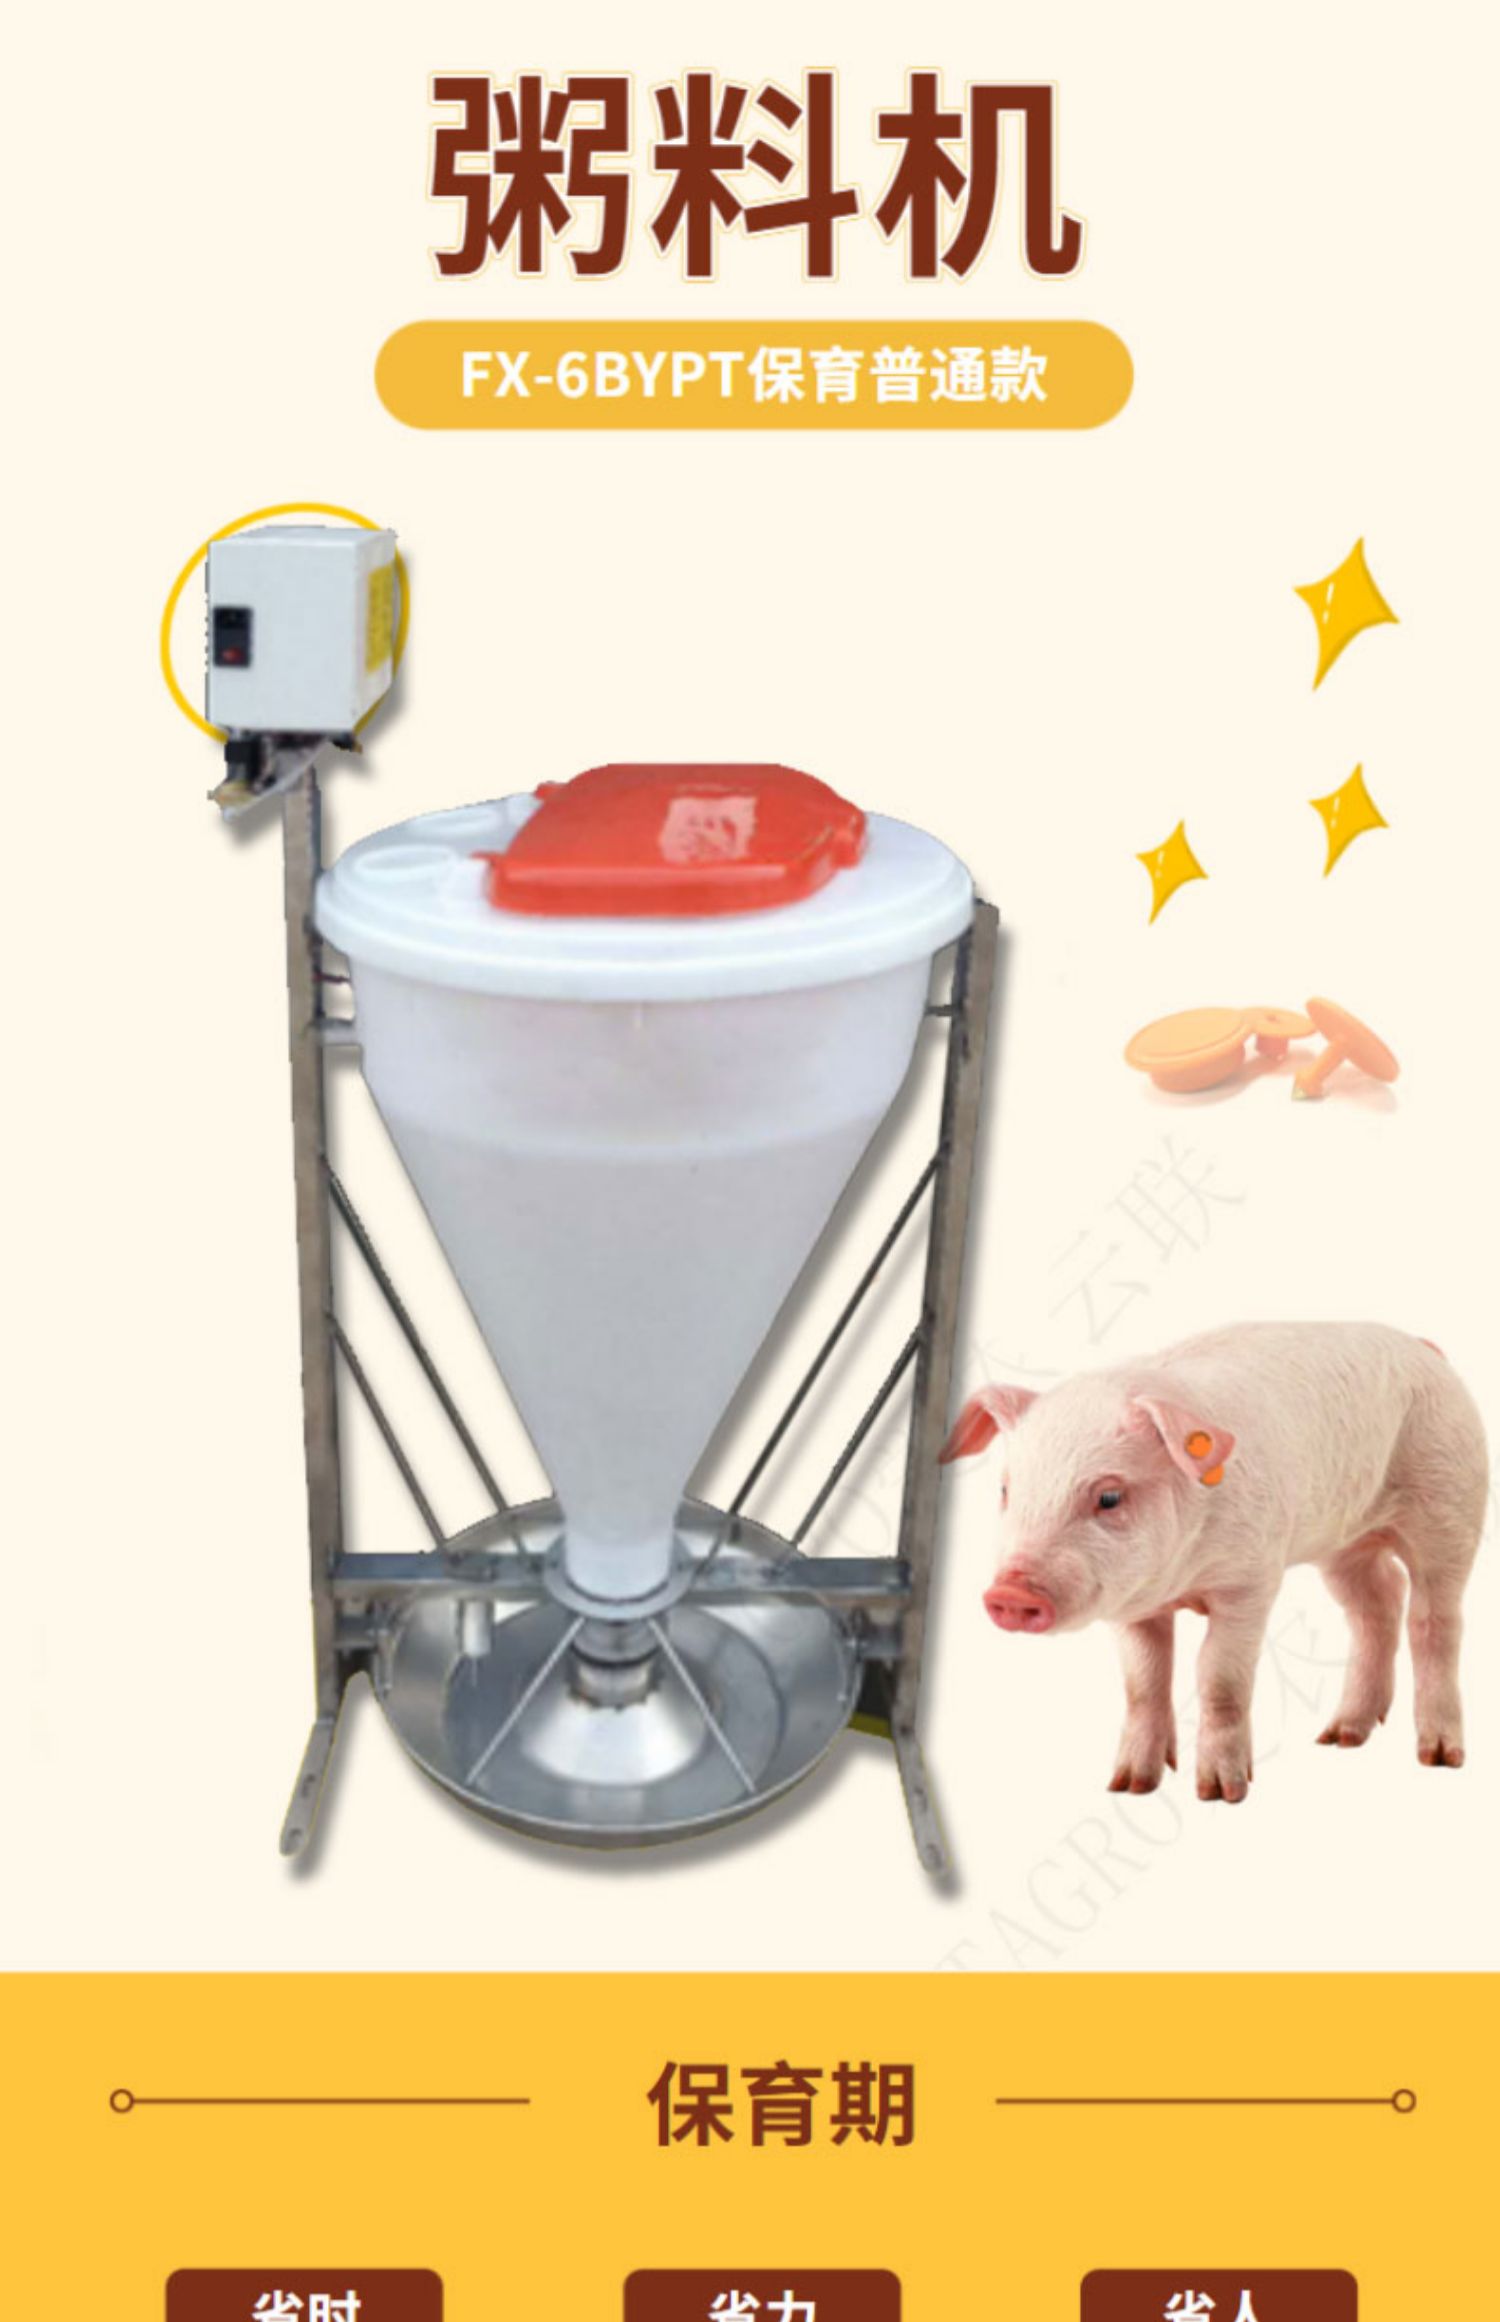 智能饲喂粥料机是一项智能化的饲养设备